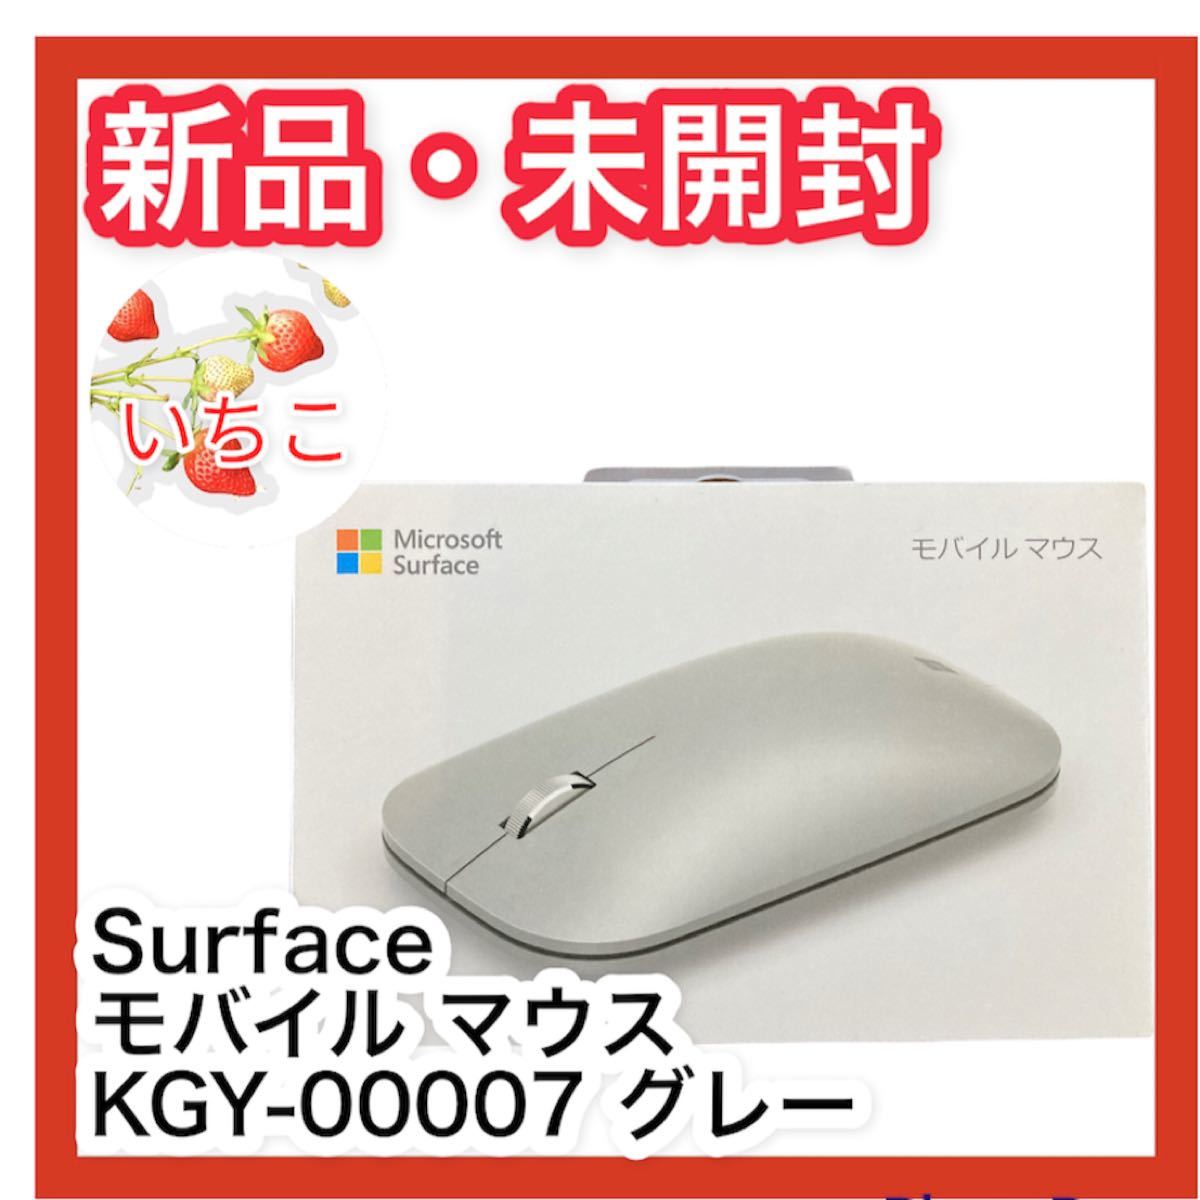 ラッピング不可】 マイクロソフト 純正 Surface モバイル マウス KGY-00007 グレー riosmauricio.com